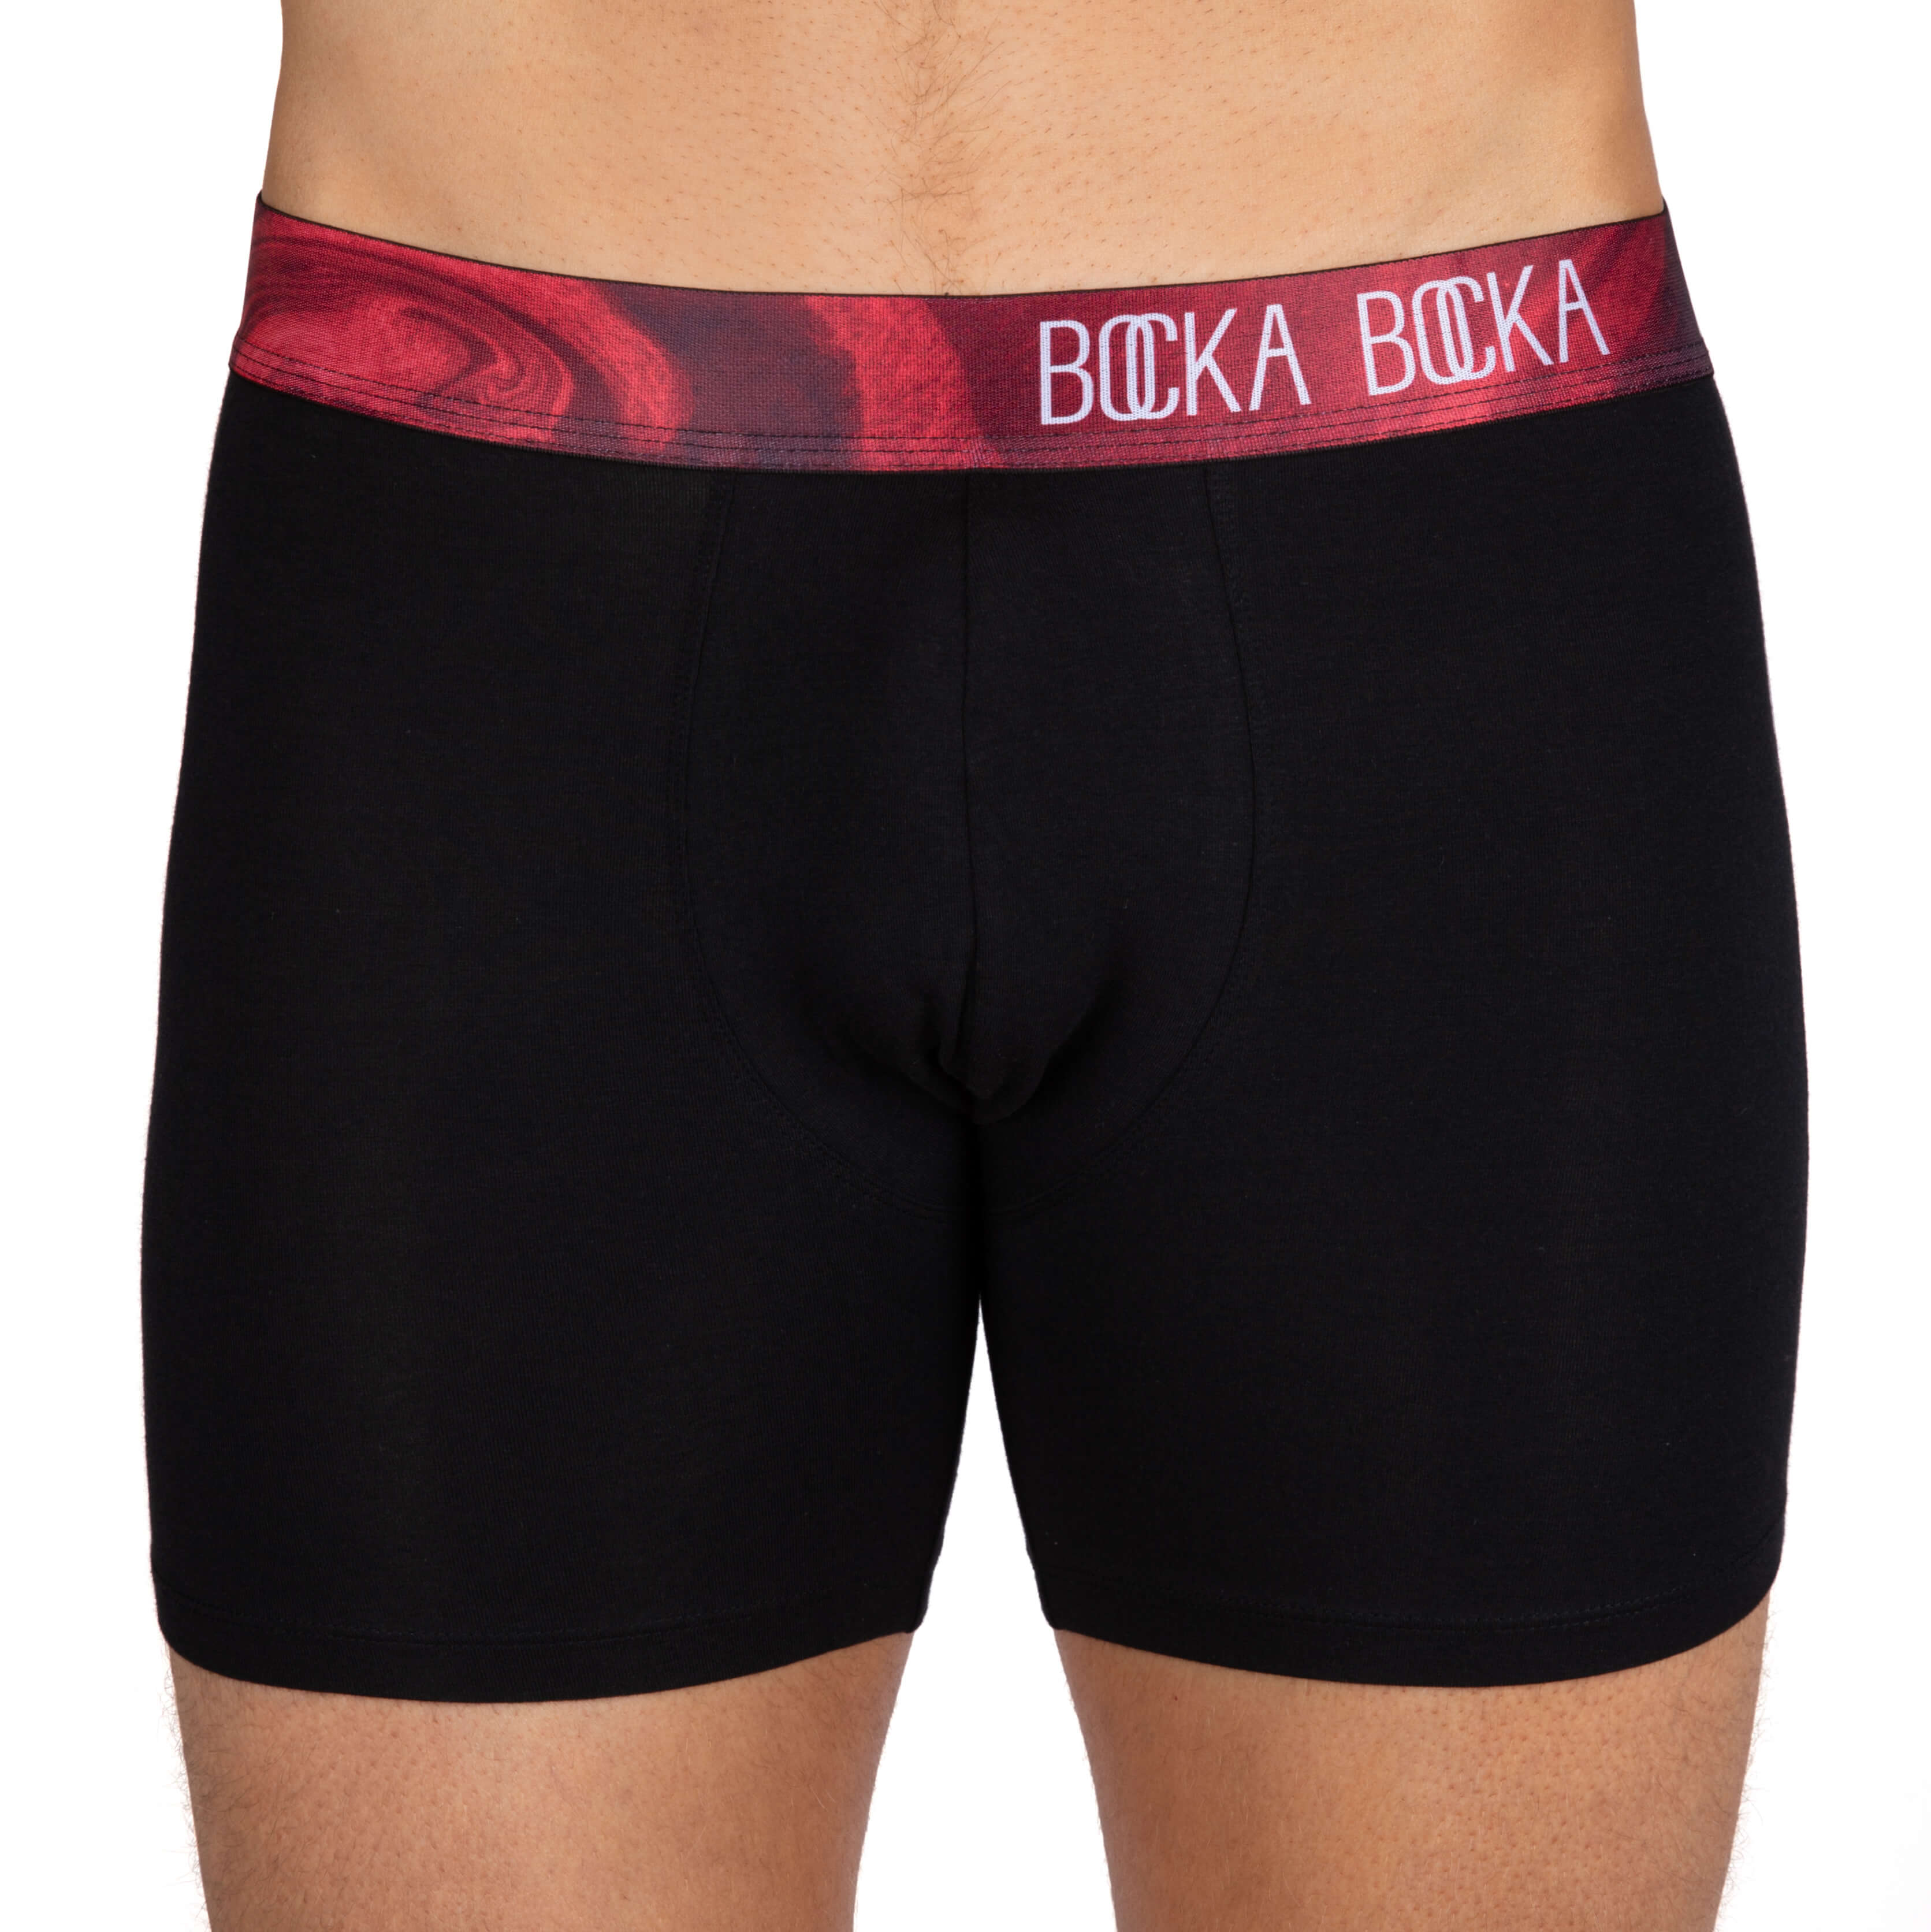 Mens Designer Underwear Boxer Briefs, Red and Black